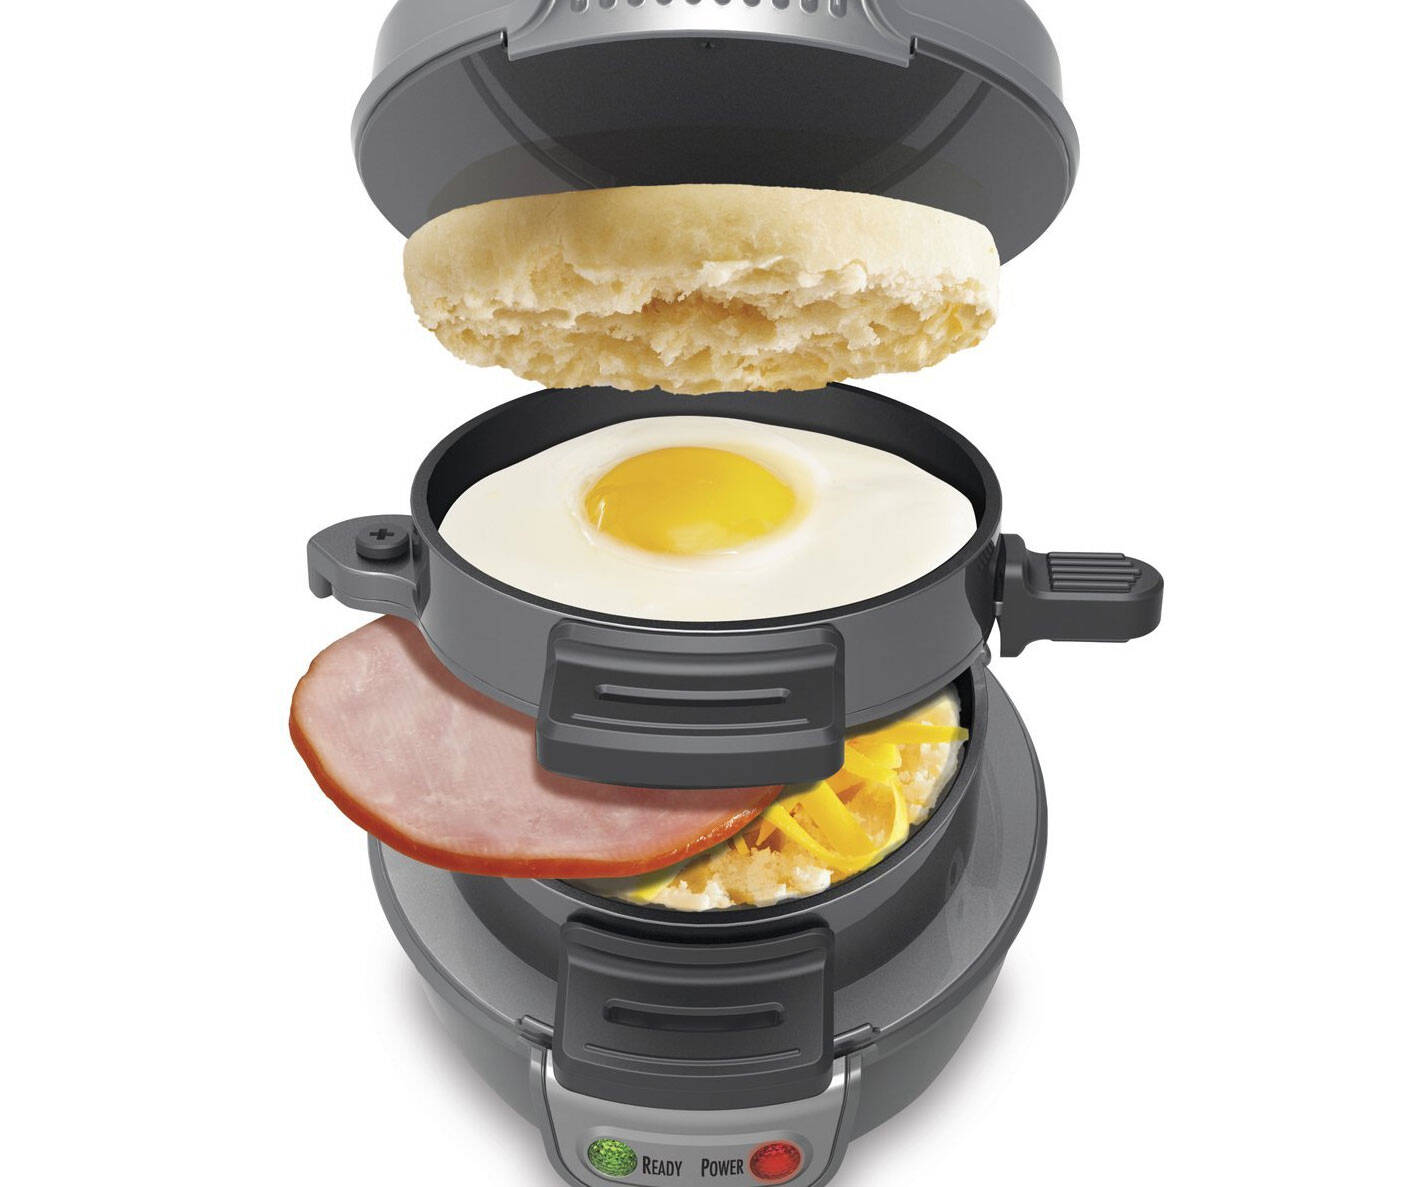 Ultimate Breakfast Machine - //coolthings.us